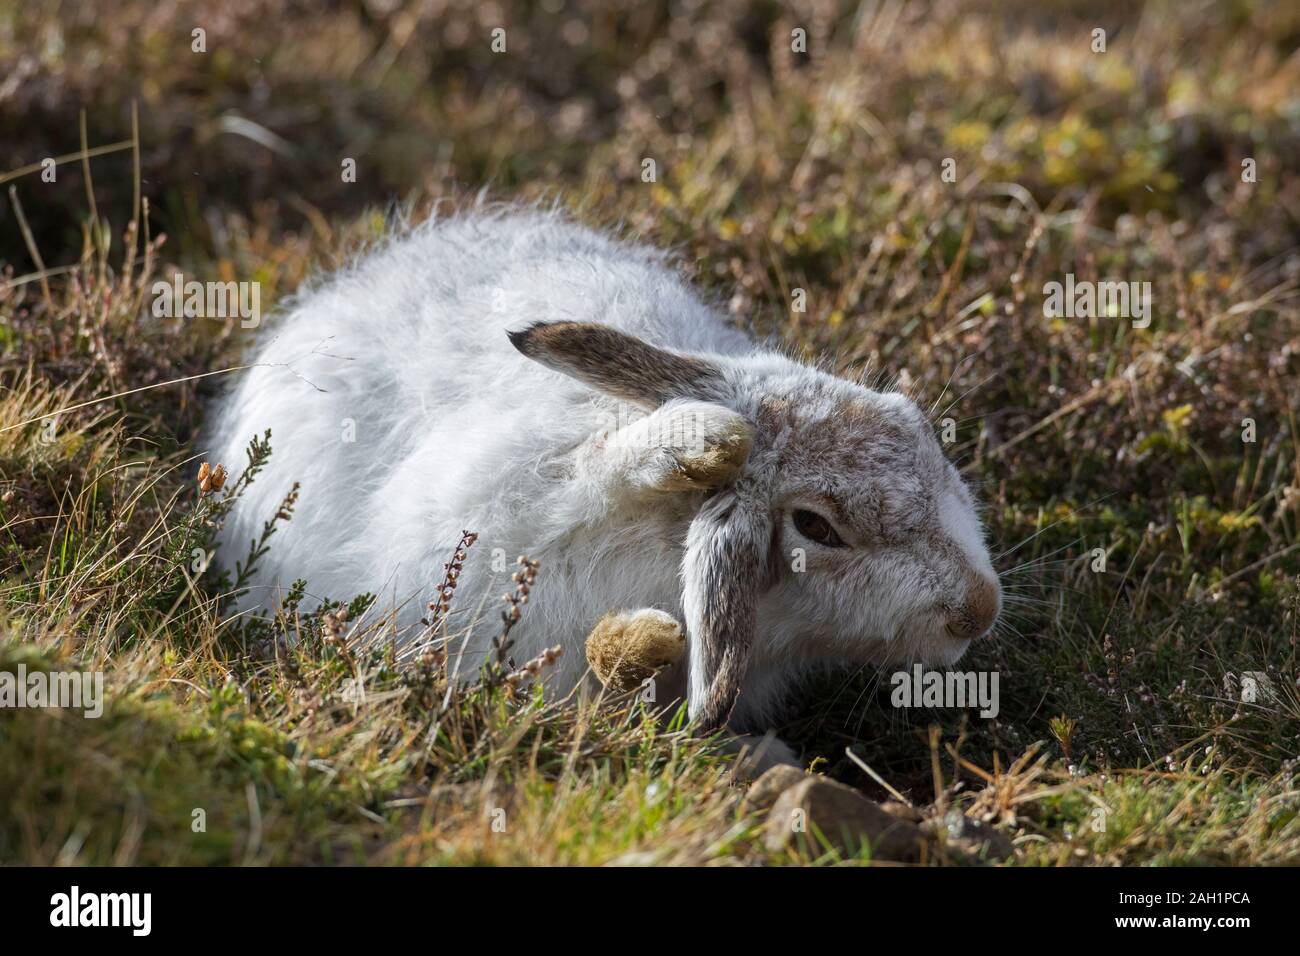 Schneehase/Alpine Hase/Schneehase (Lepus timidus) in weiß winter Fell pflege Fell im Frühjahr Stockfoto